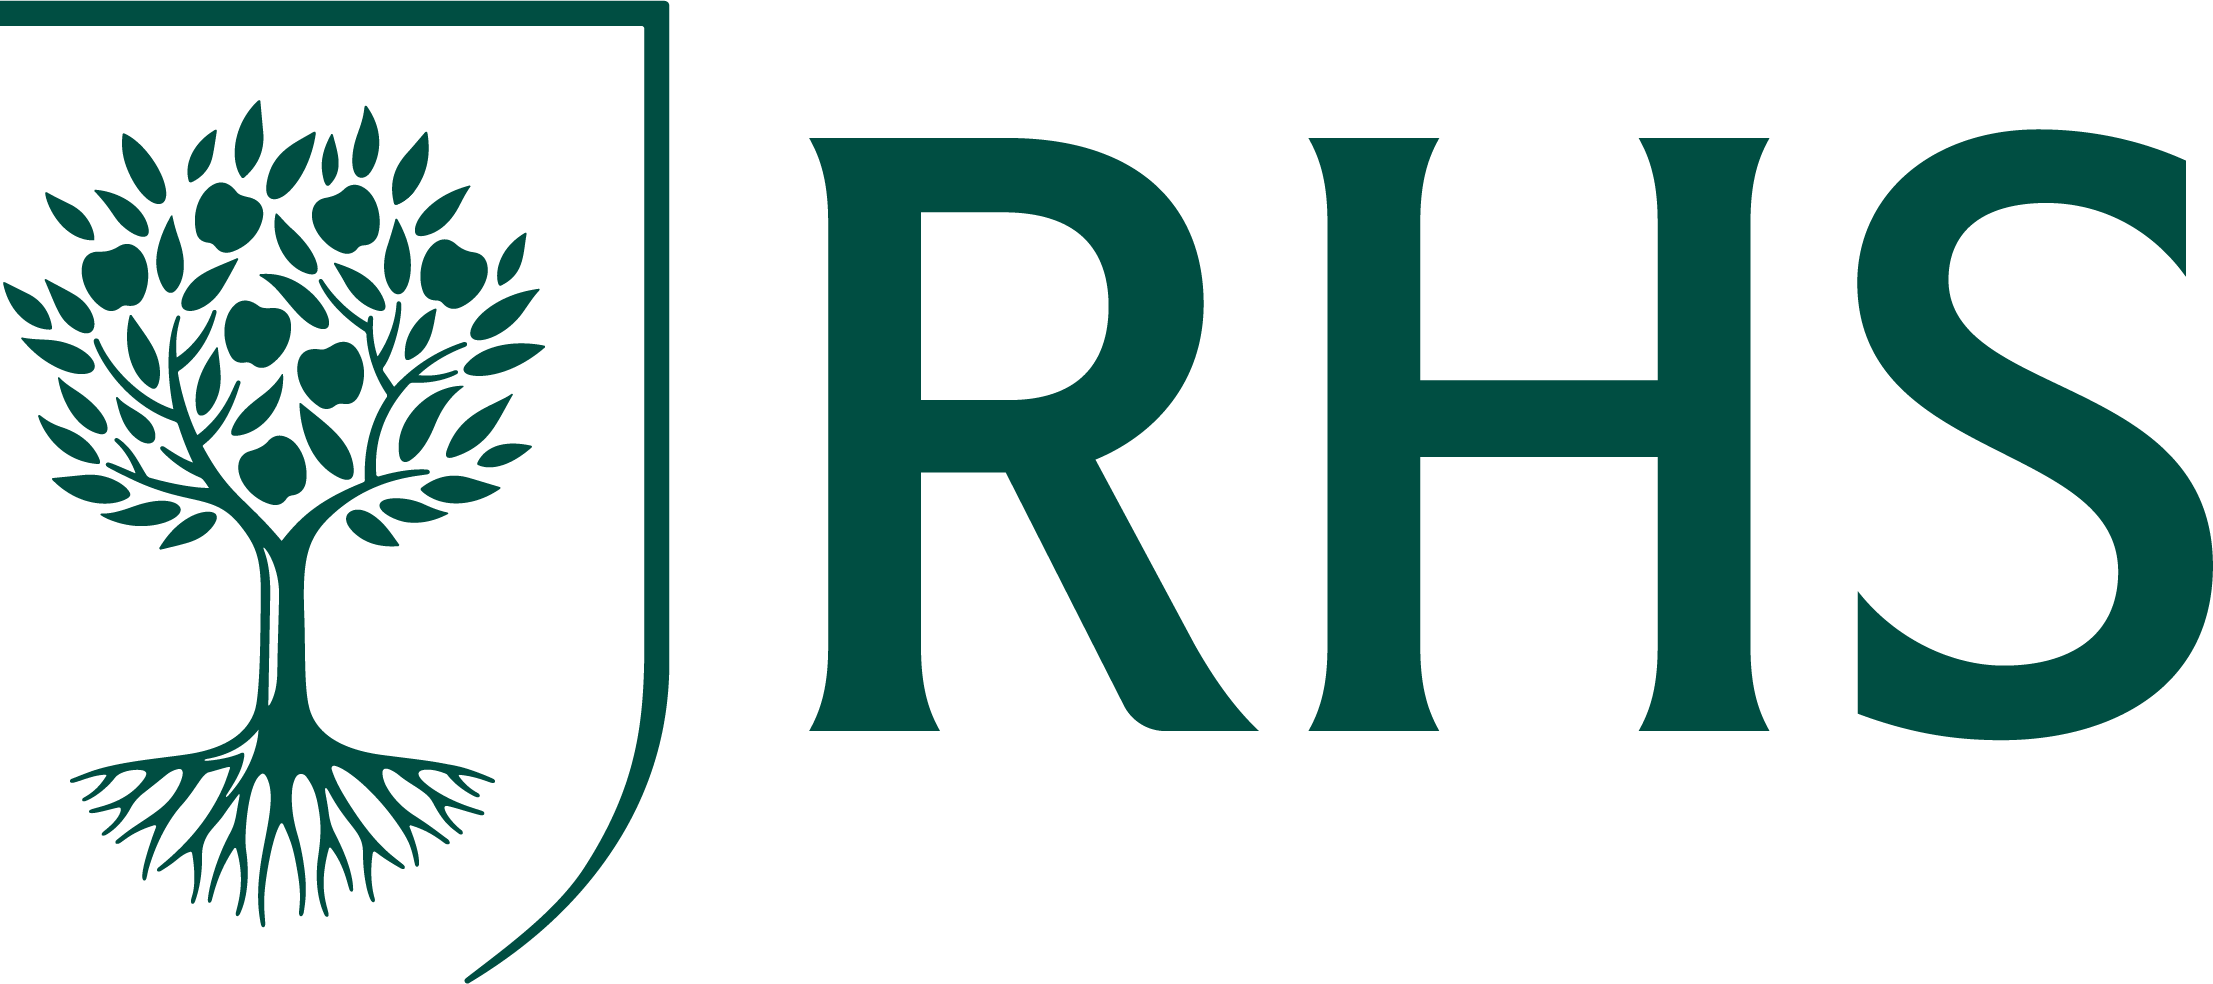 rhs-logo